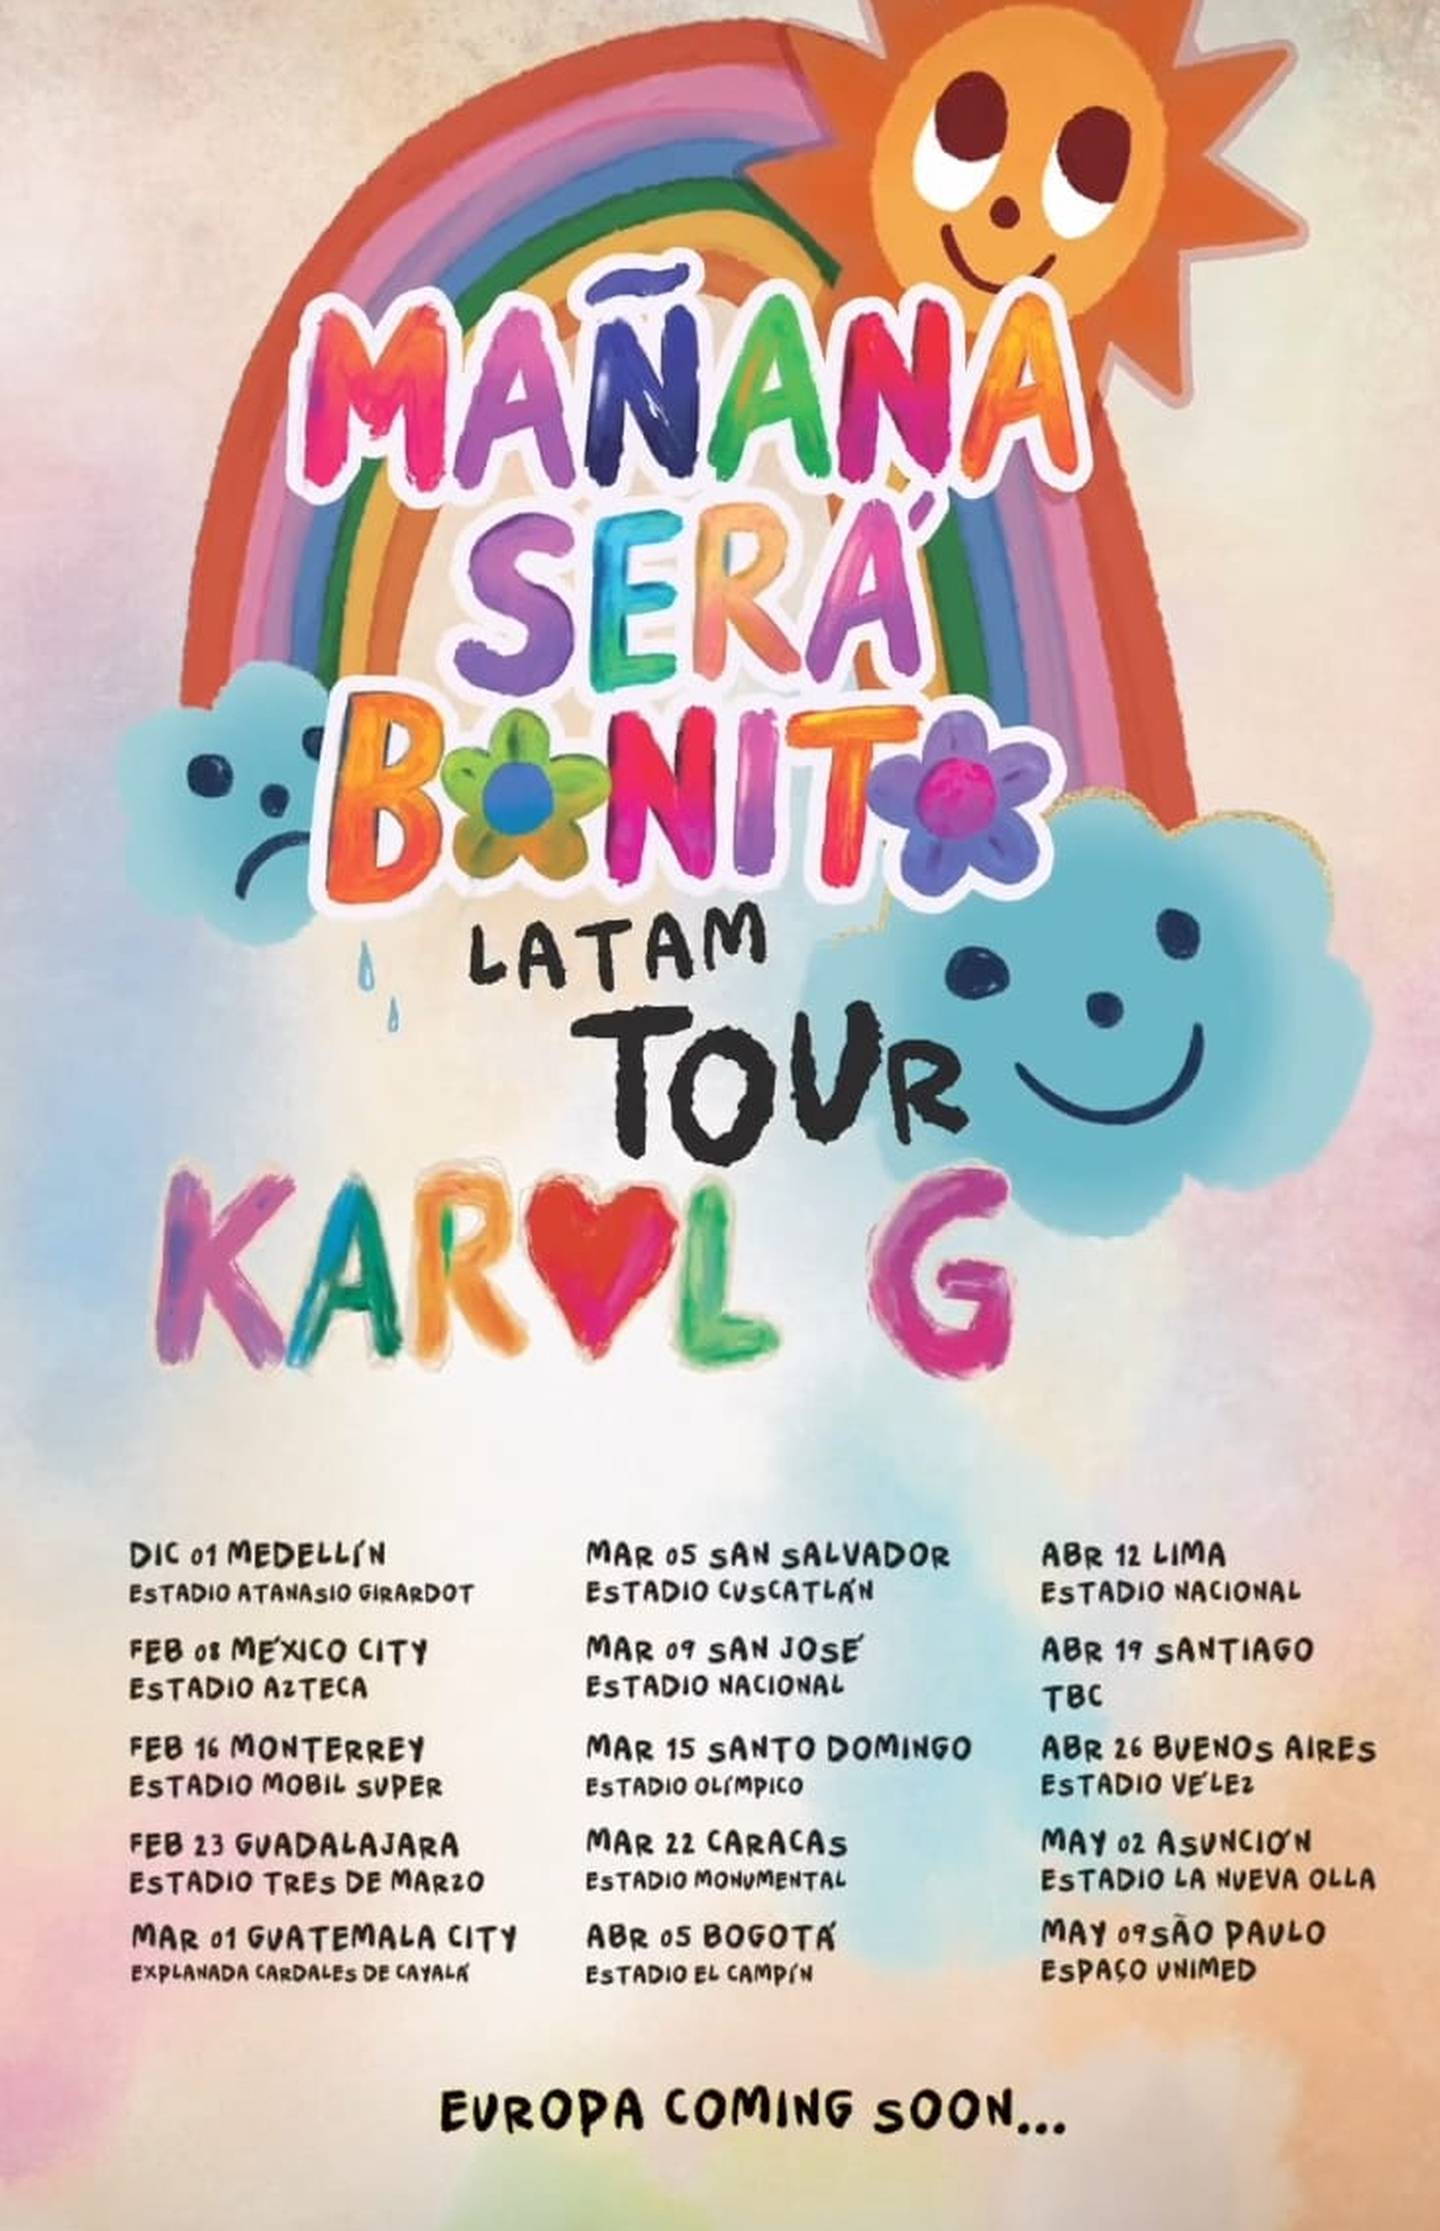 Karol G publicó las fechas de su tour por Latinoamérica y confirmó cuándo presentará su concierto en Costa Rica.